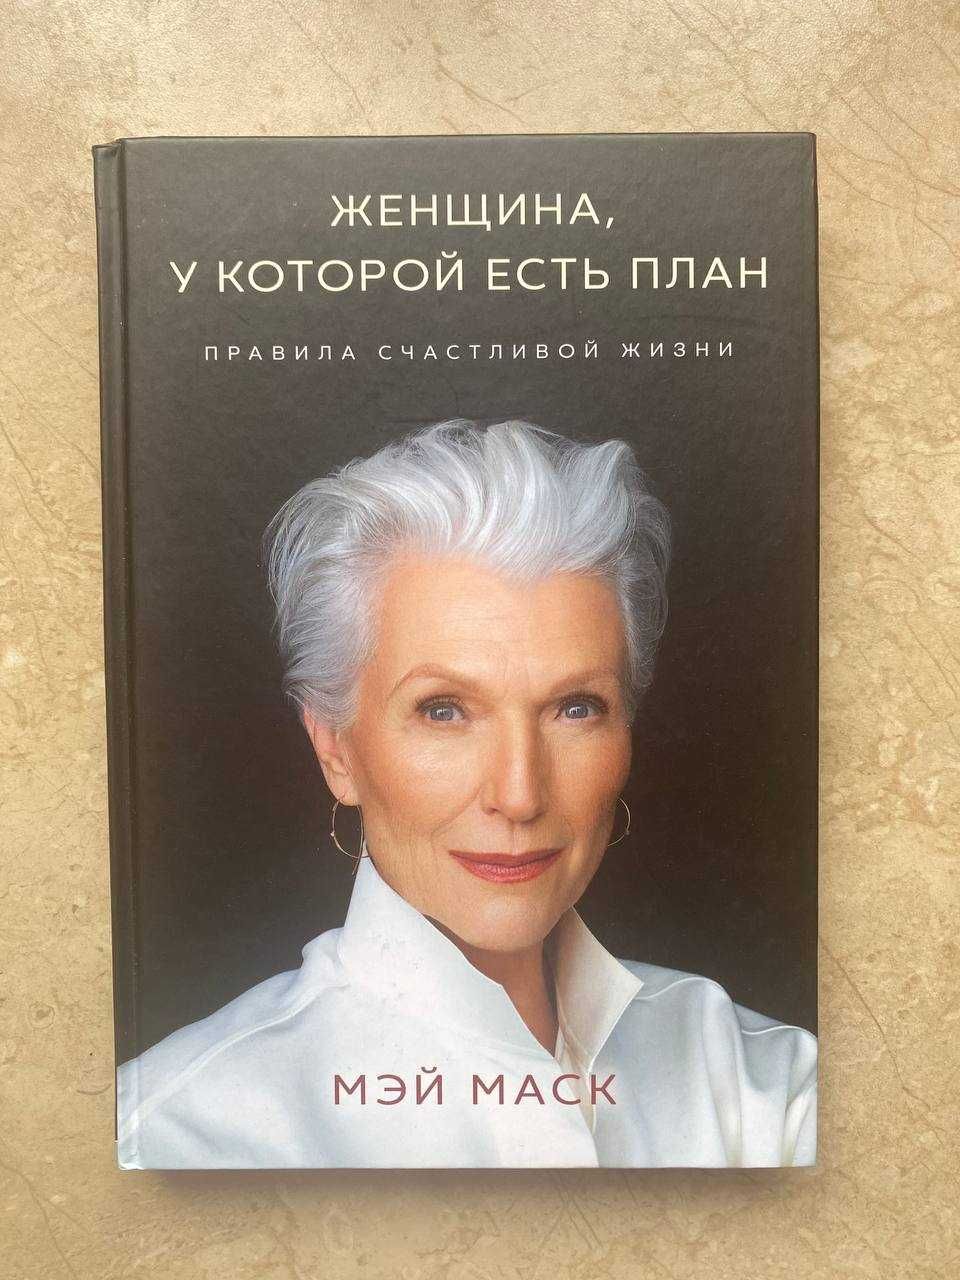 Книга "Женщина, у которой есть план"  Мэй Маск